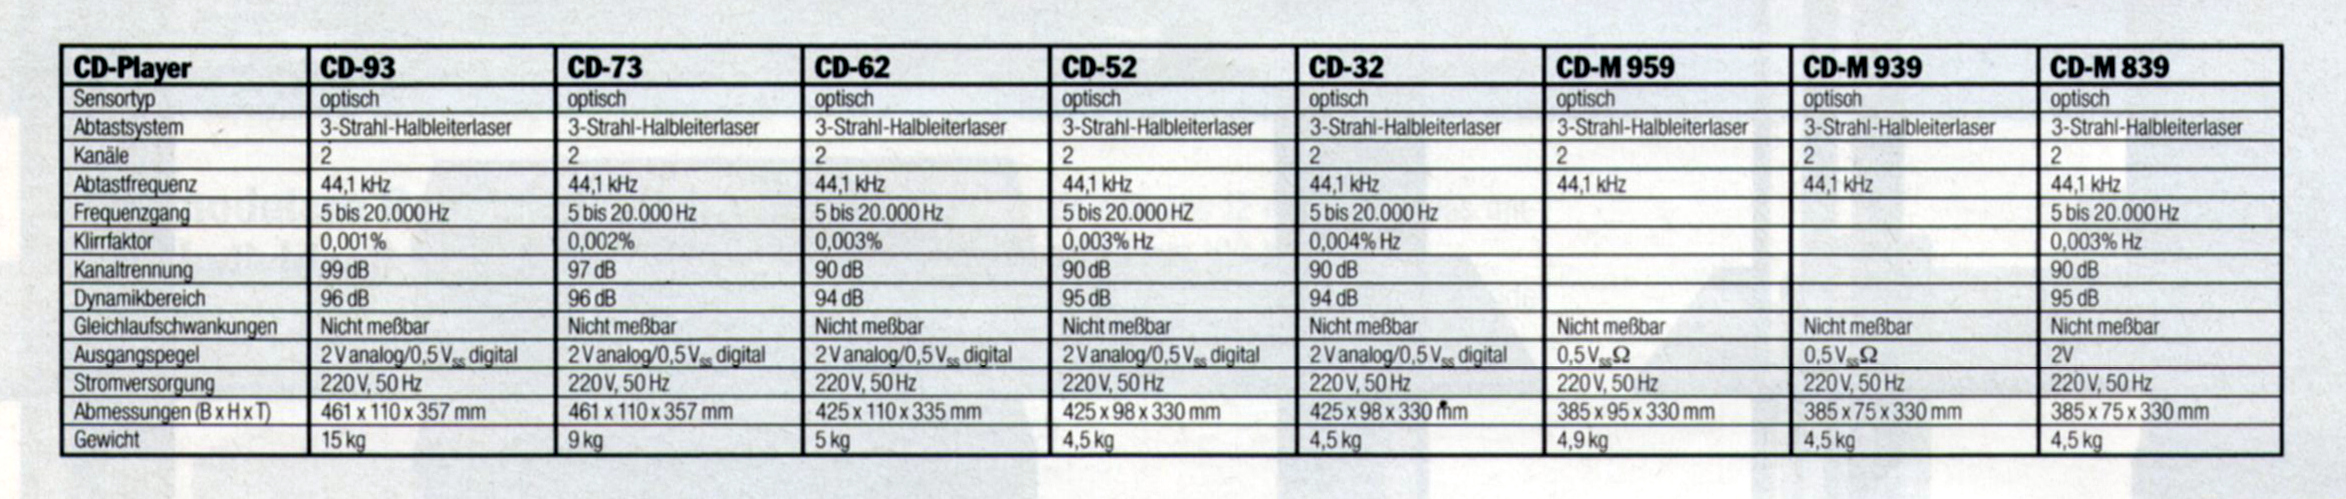 Akai CD- Daten-1989.jpg